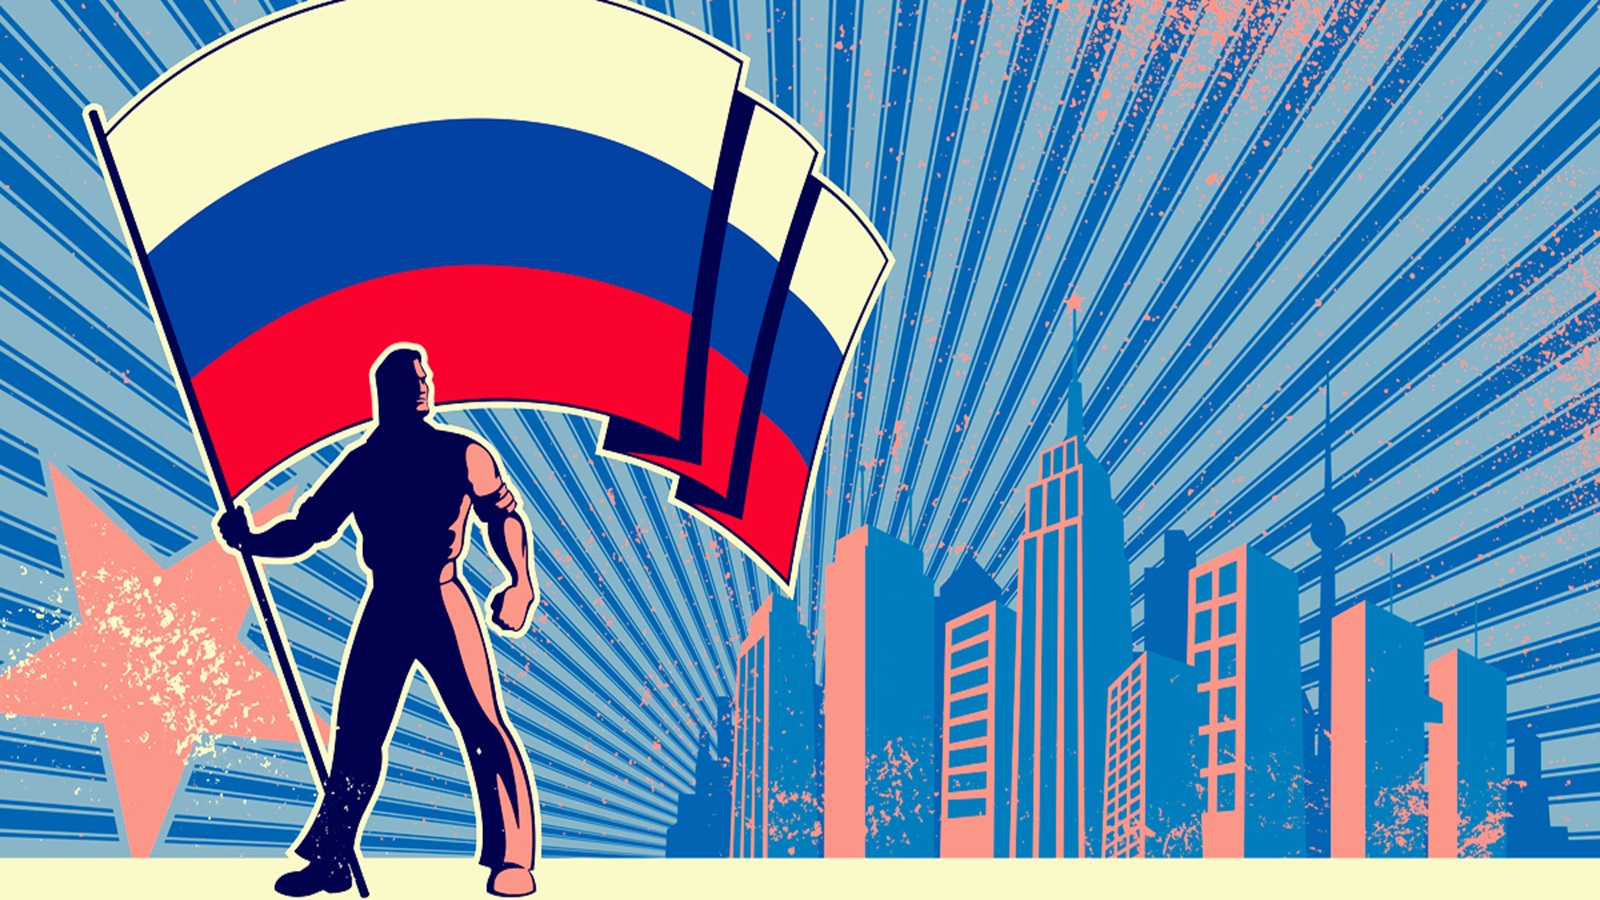 روسيا تستهدف أوروبا بالدعاية لزعزعة الرأي العام قبل الانتخابات